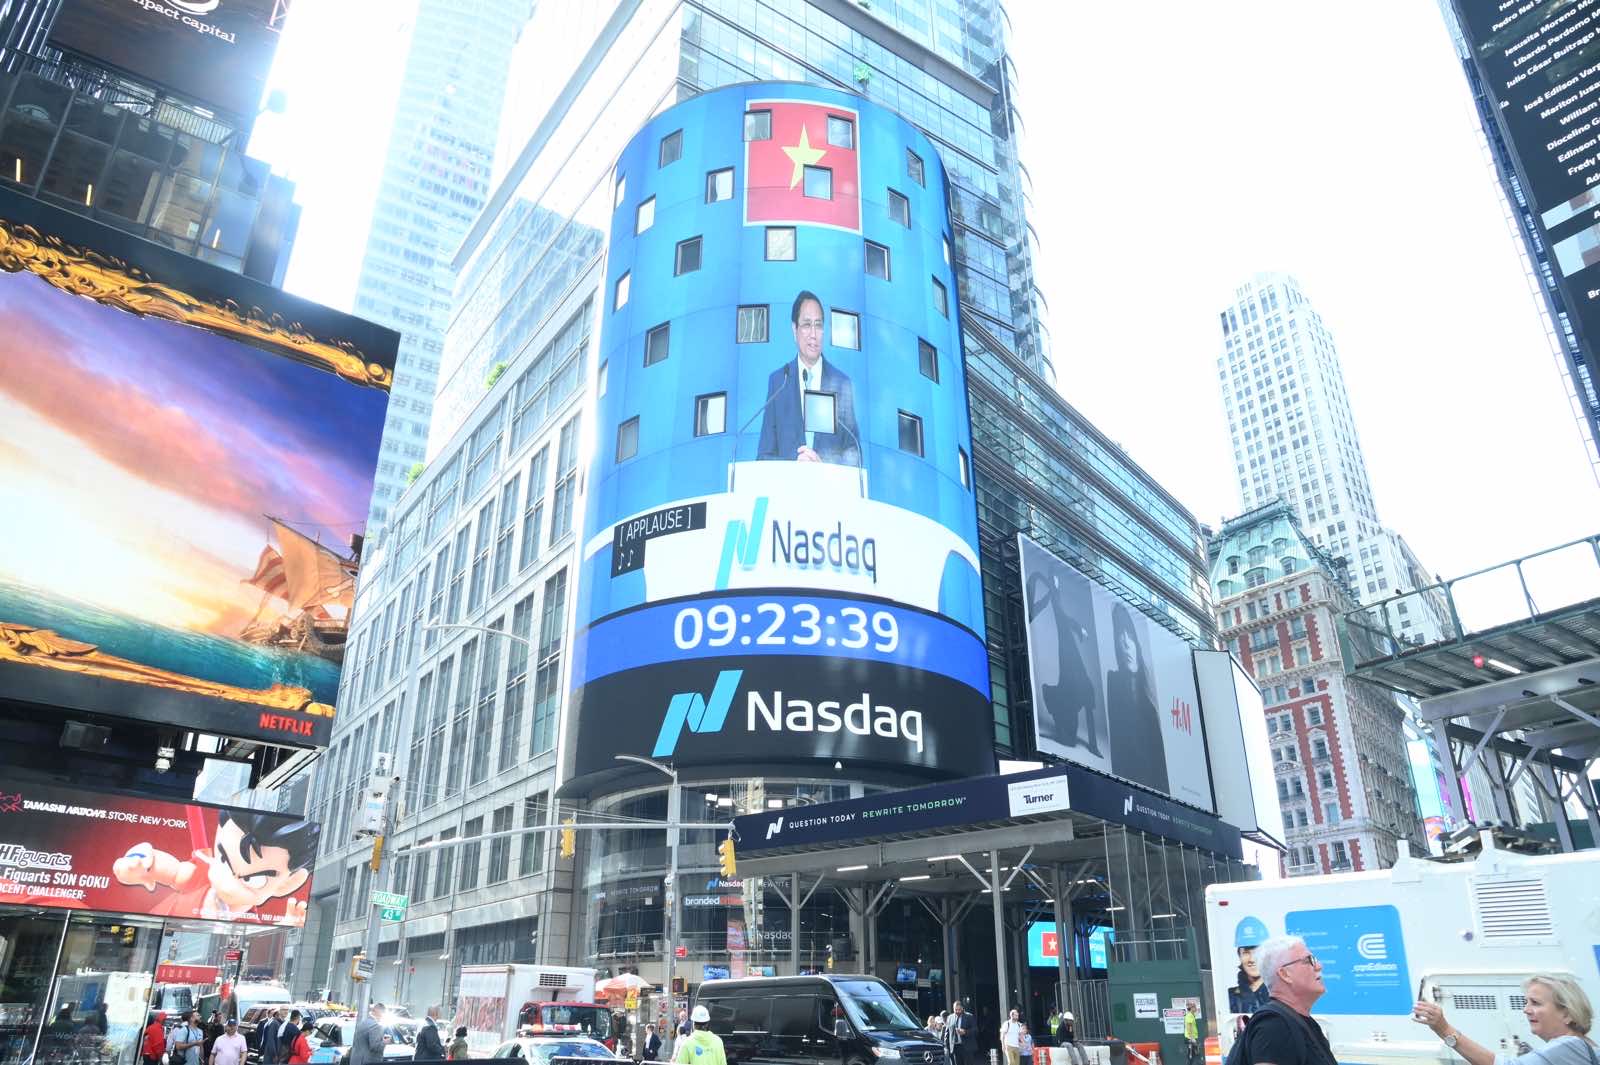 Thủ tướng rung chuông tại Sàn chứng khoán NASDAQ, kêu gọi các nhà đầu tư Hoa Kỳ - Ảnh 10.